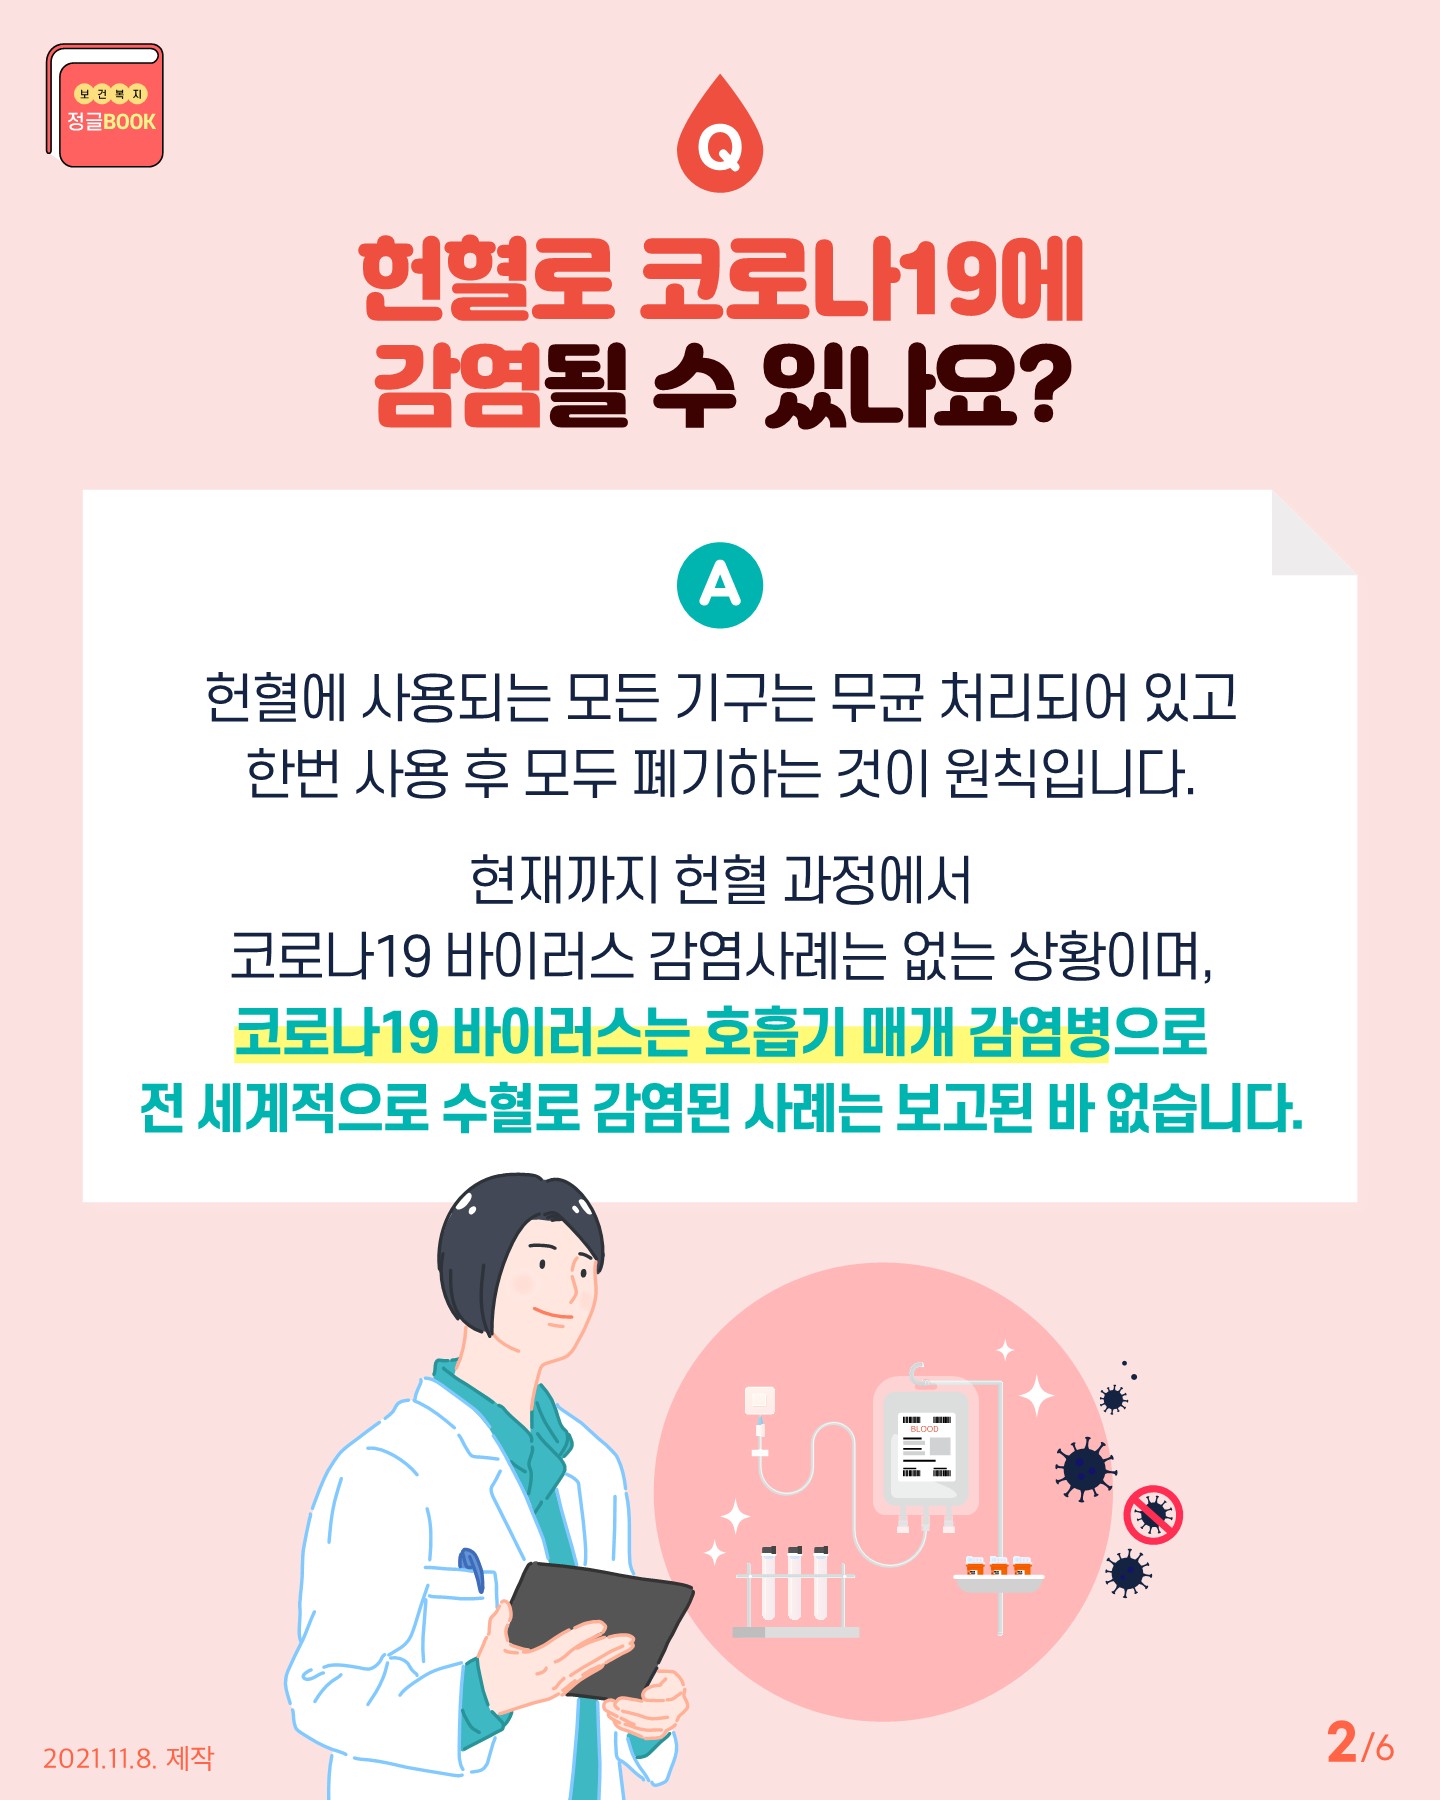 전라북도교육청 인성건강과_Q_A로 알아보는 헌혈 궁금증(카드뉴스)_2